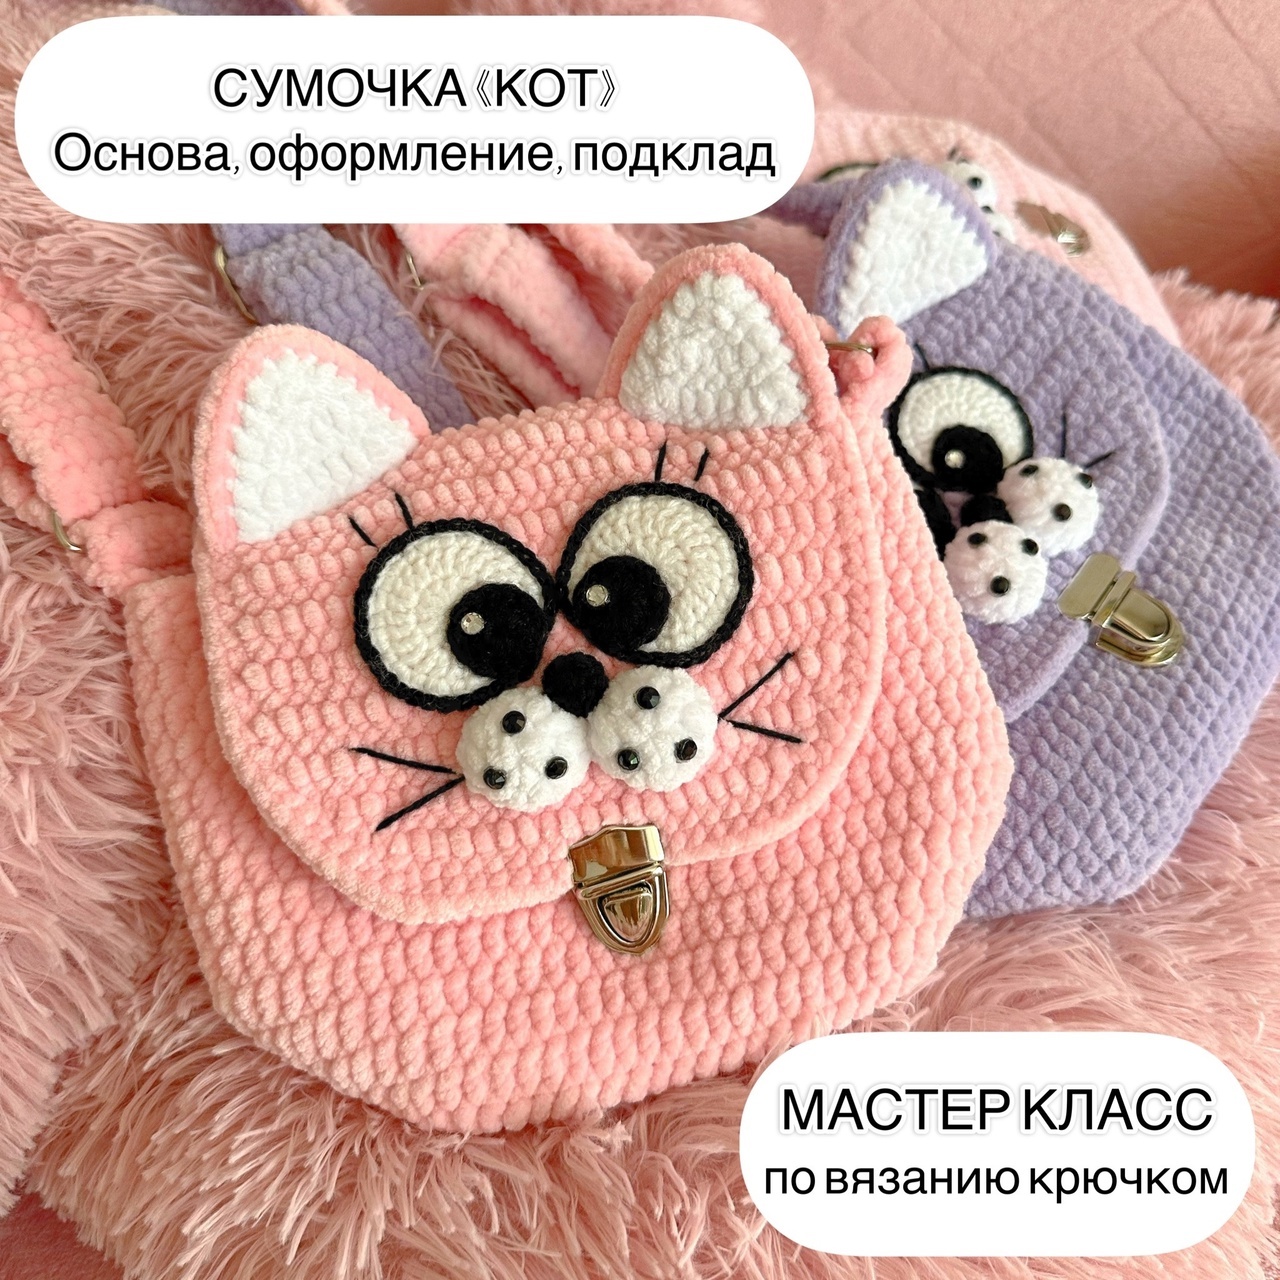 Авторские МК Алены Потаповой (вязаные игрушки)